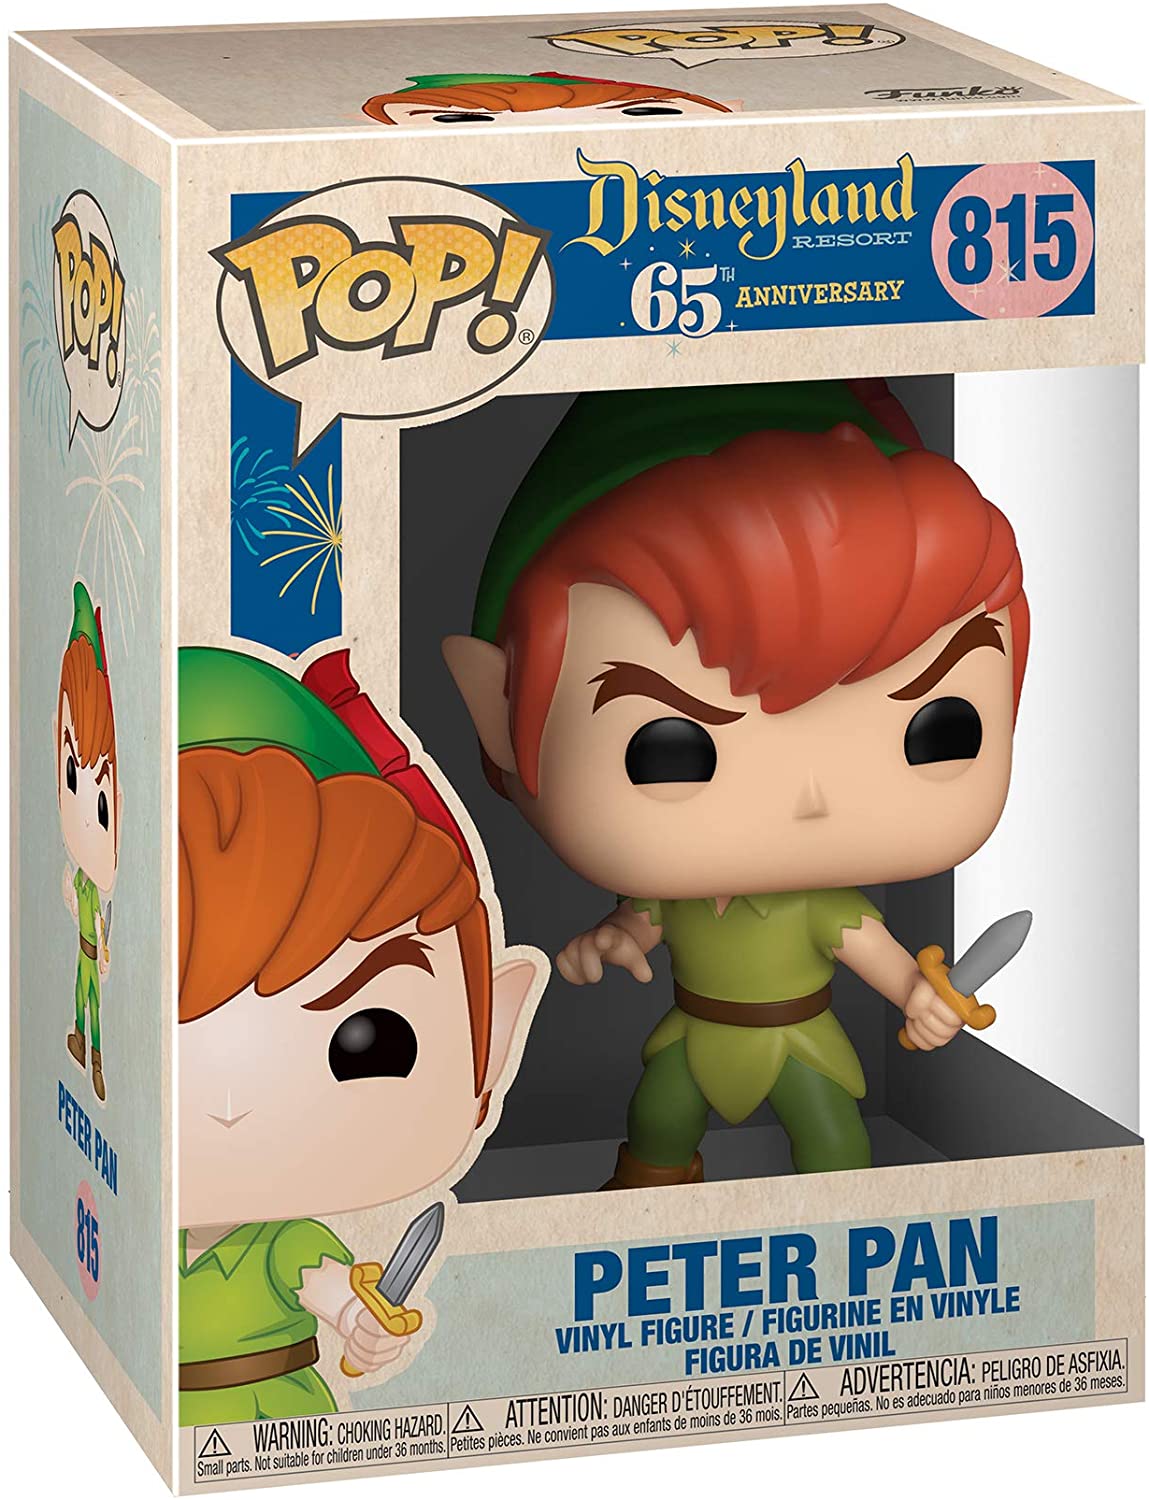 Pop! Vinyl/Peter Pan - Disney 65 [Toy] – Taz Records